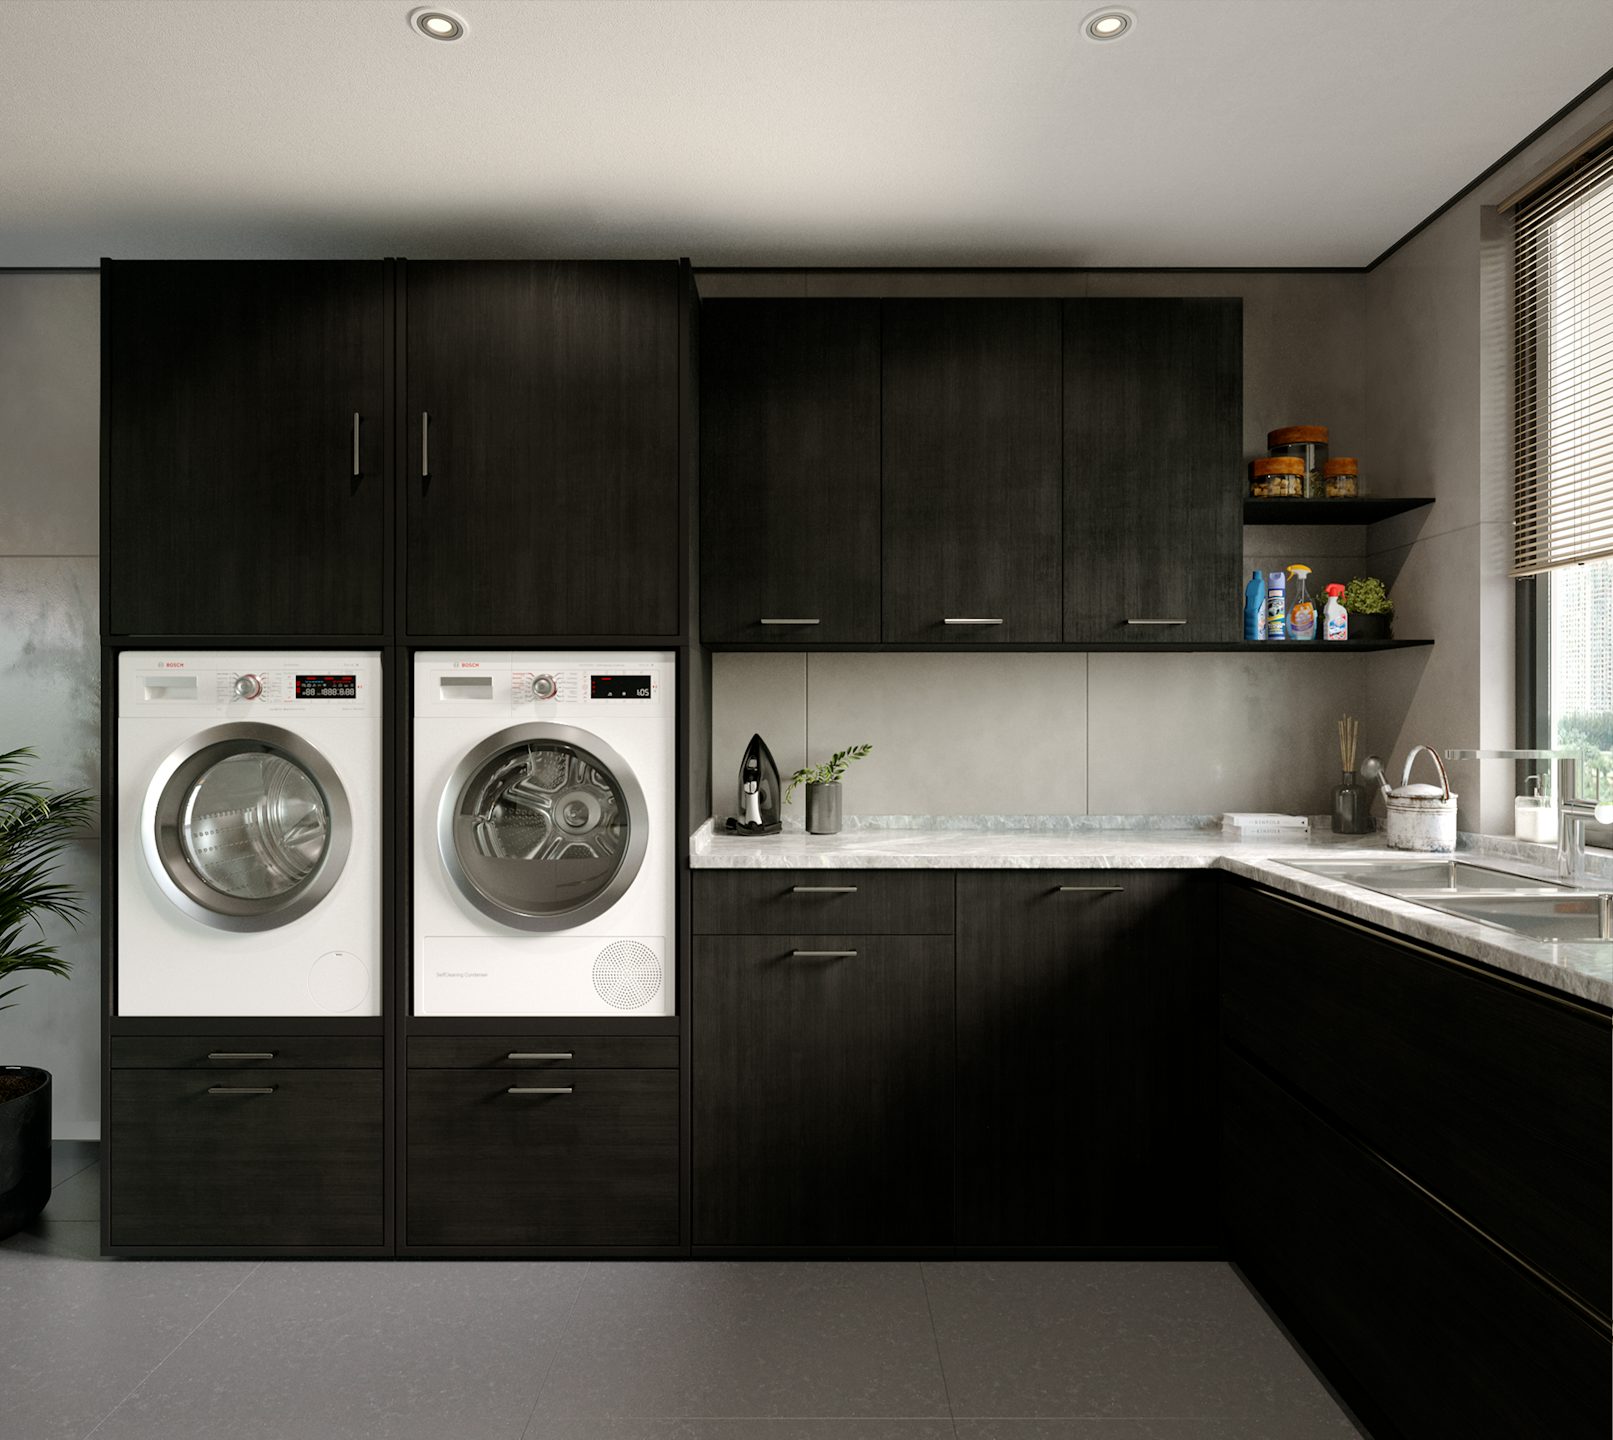 bijkeuken wasmachine kast inspiratie met bovenkasten voor opbergen en wasmachine en droger naast elkaar verhoger zwart